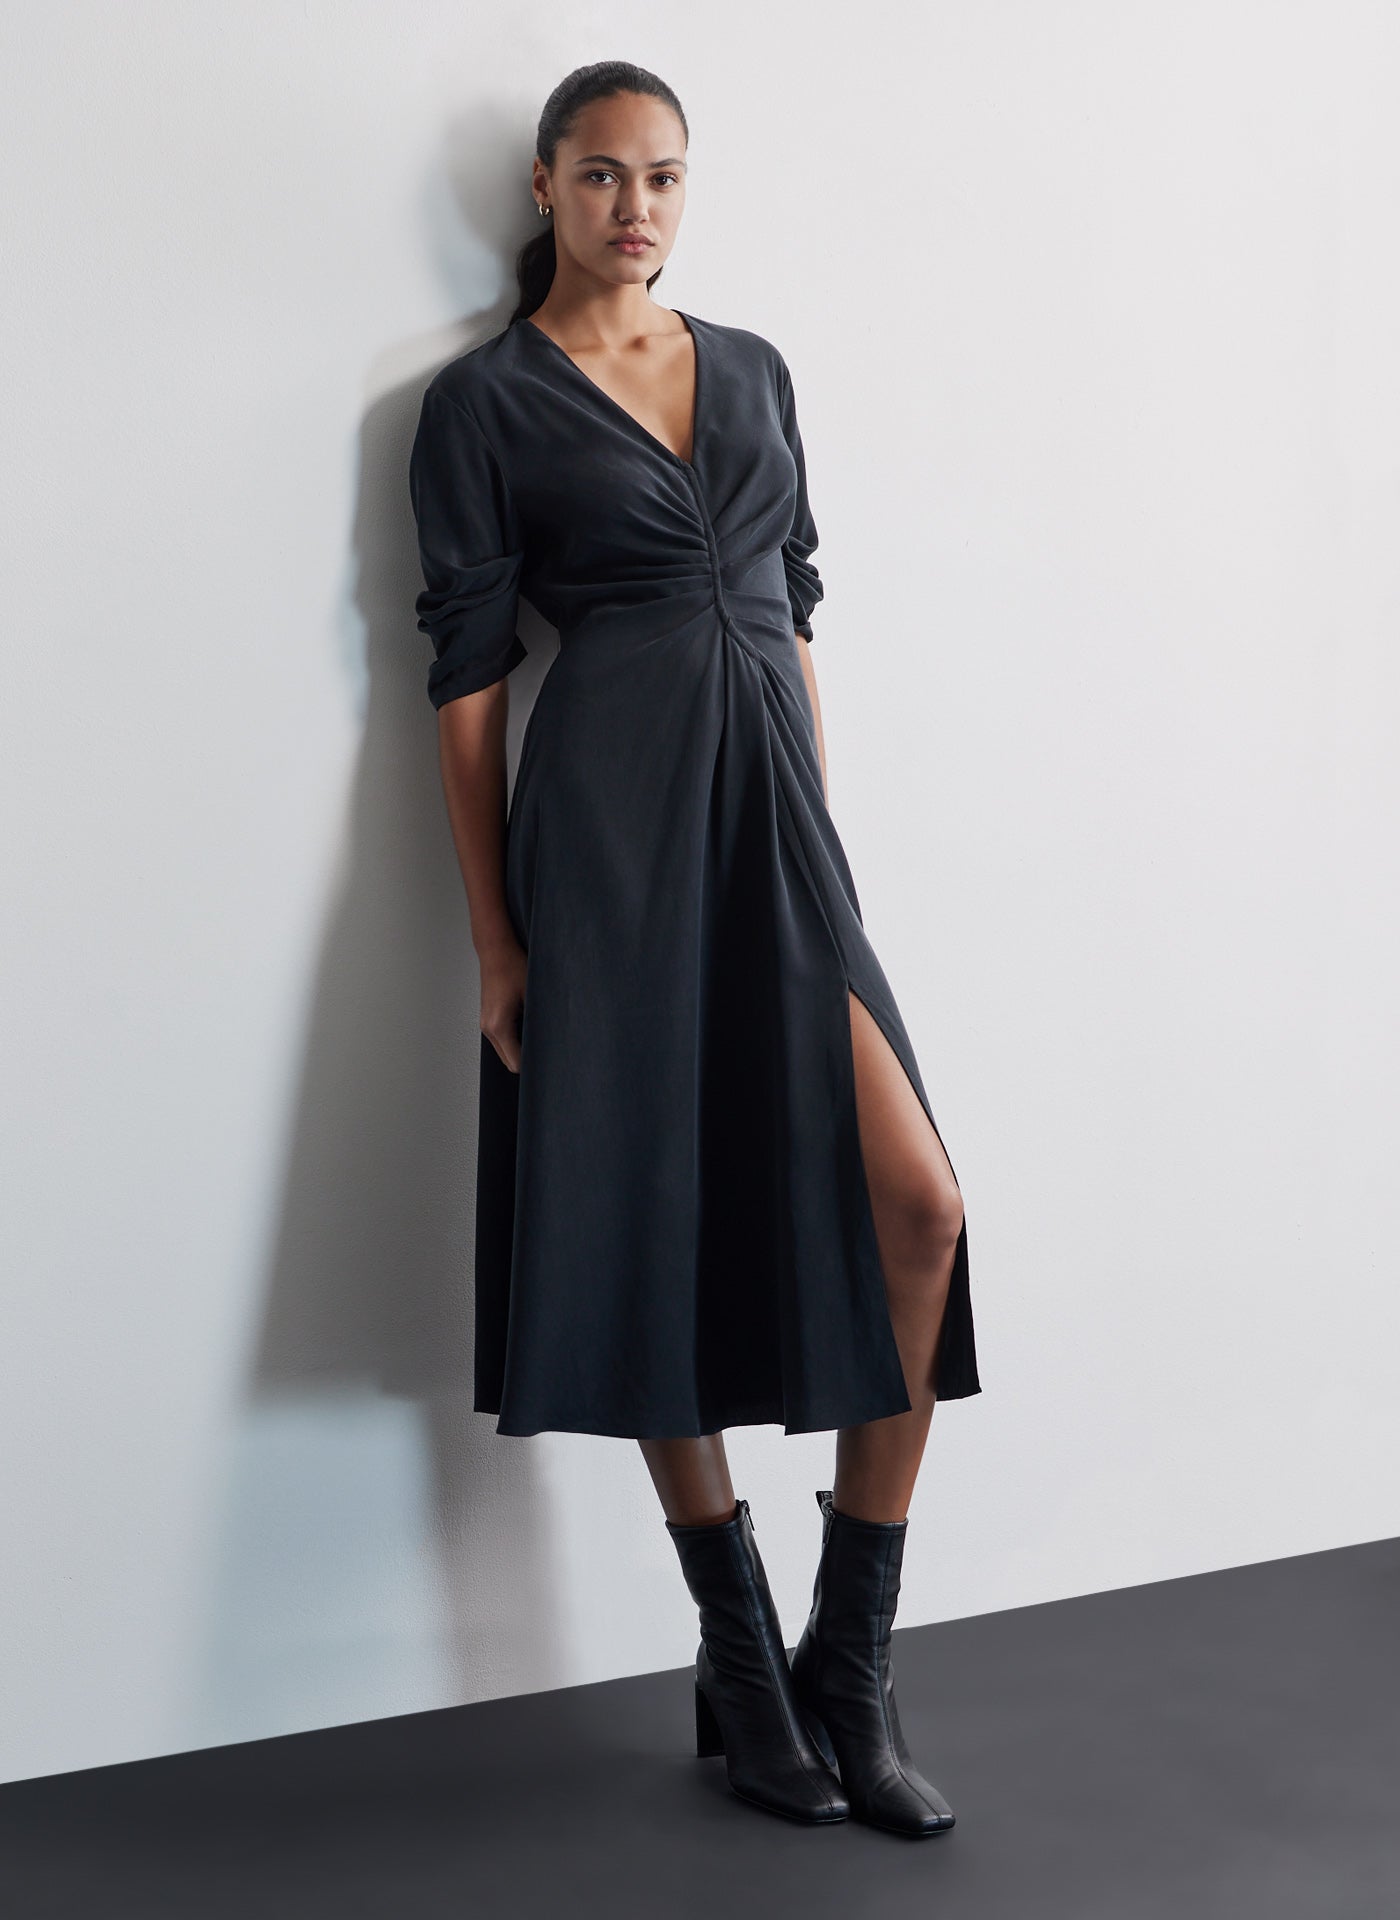 Sexy Black Dress - Strapless Midi Dress - Black Midi Dress - Lulus